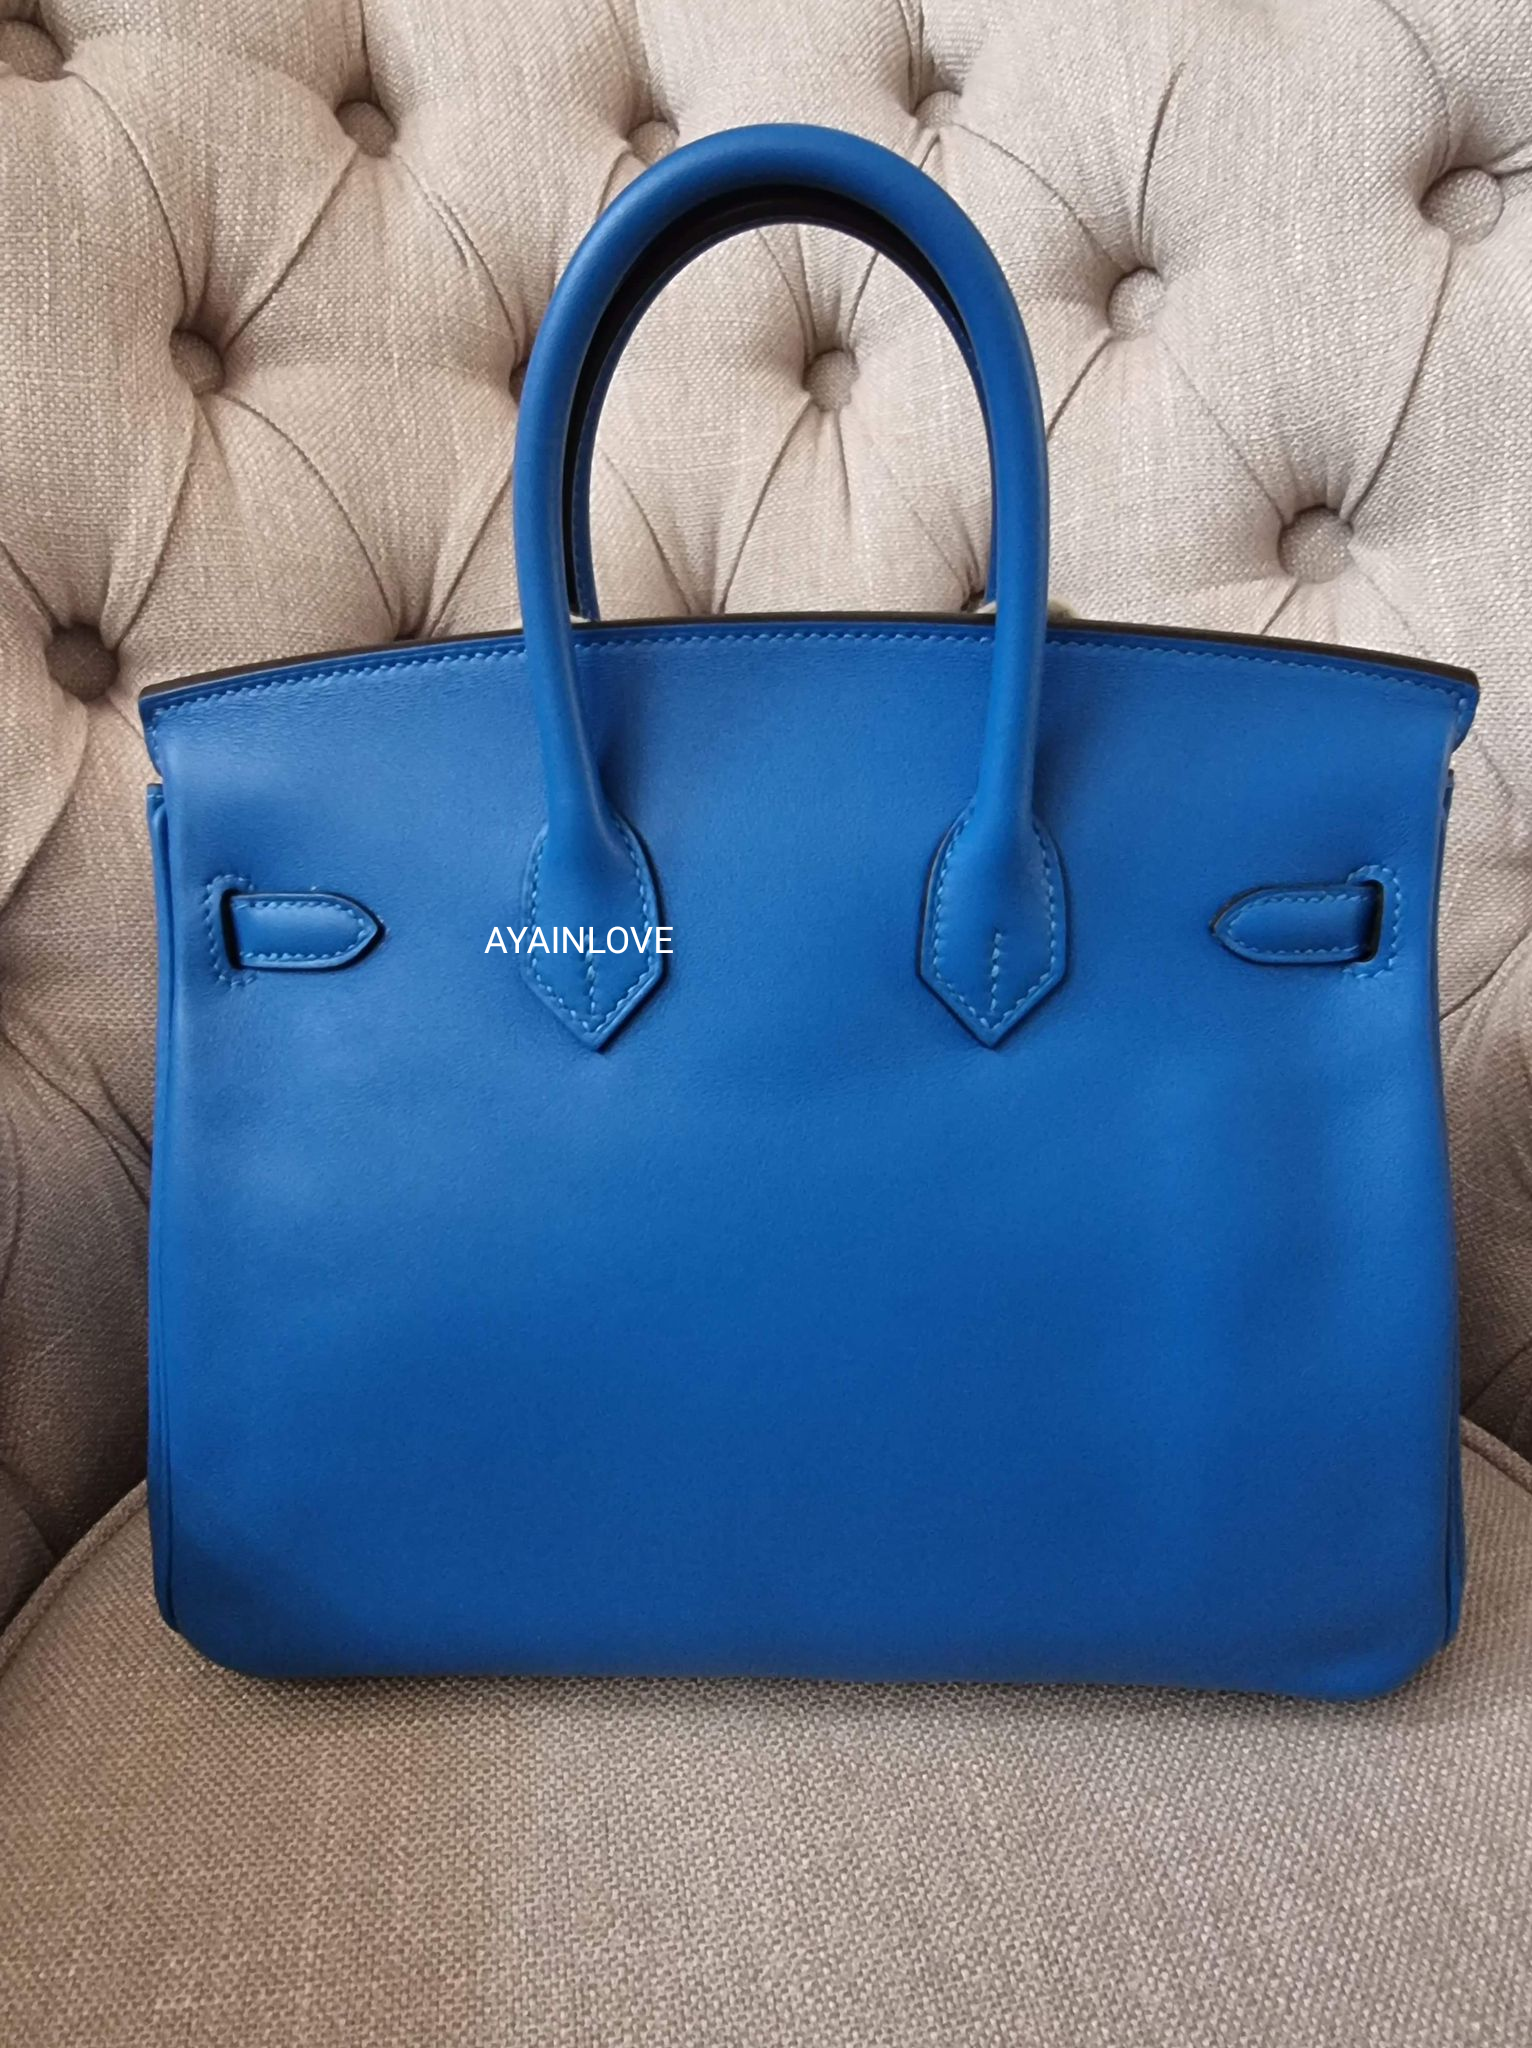 Hermes Blue Zanzibar Togo Gold Hardware Birkin 25 Handbag Bag Tote